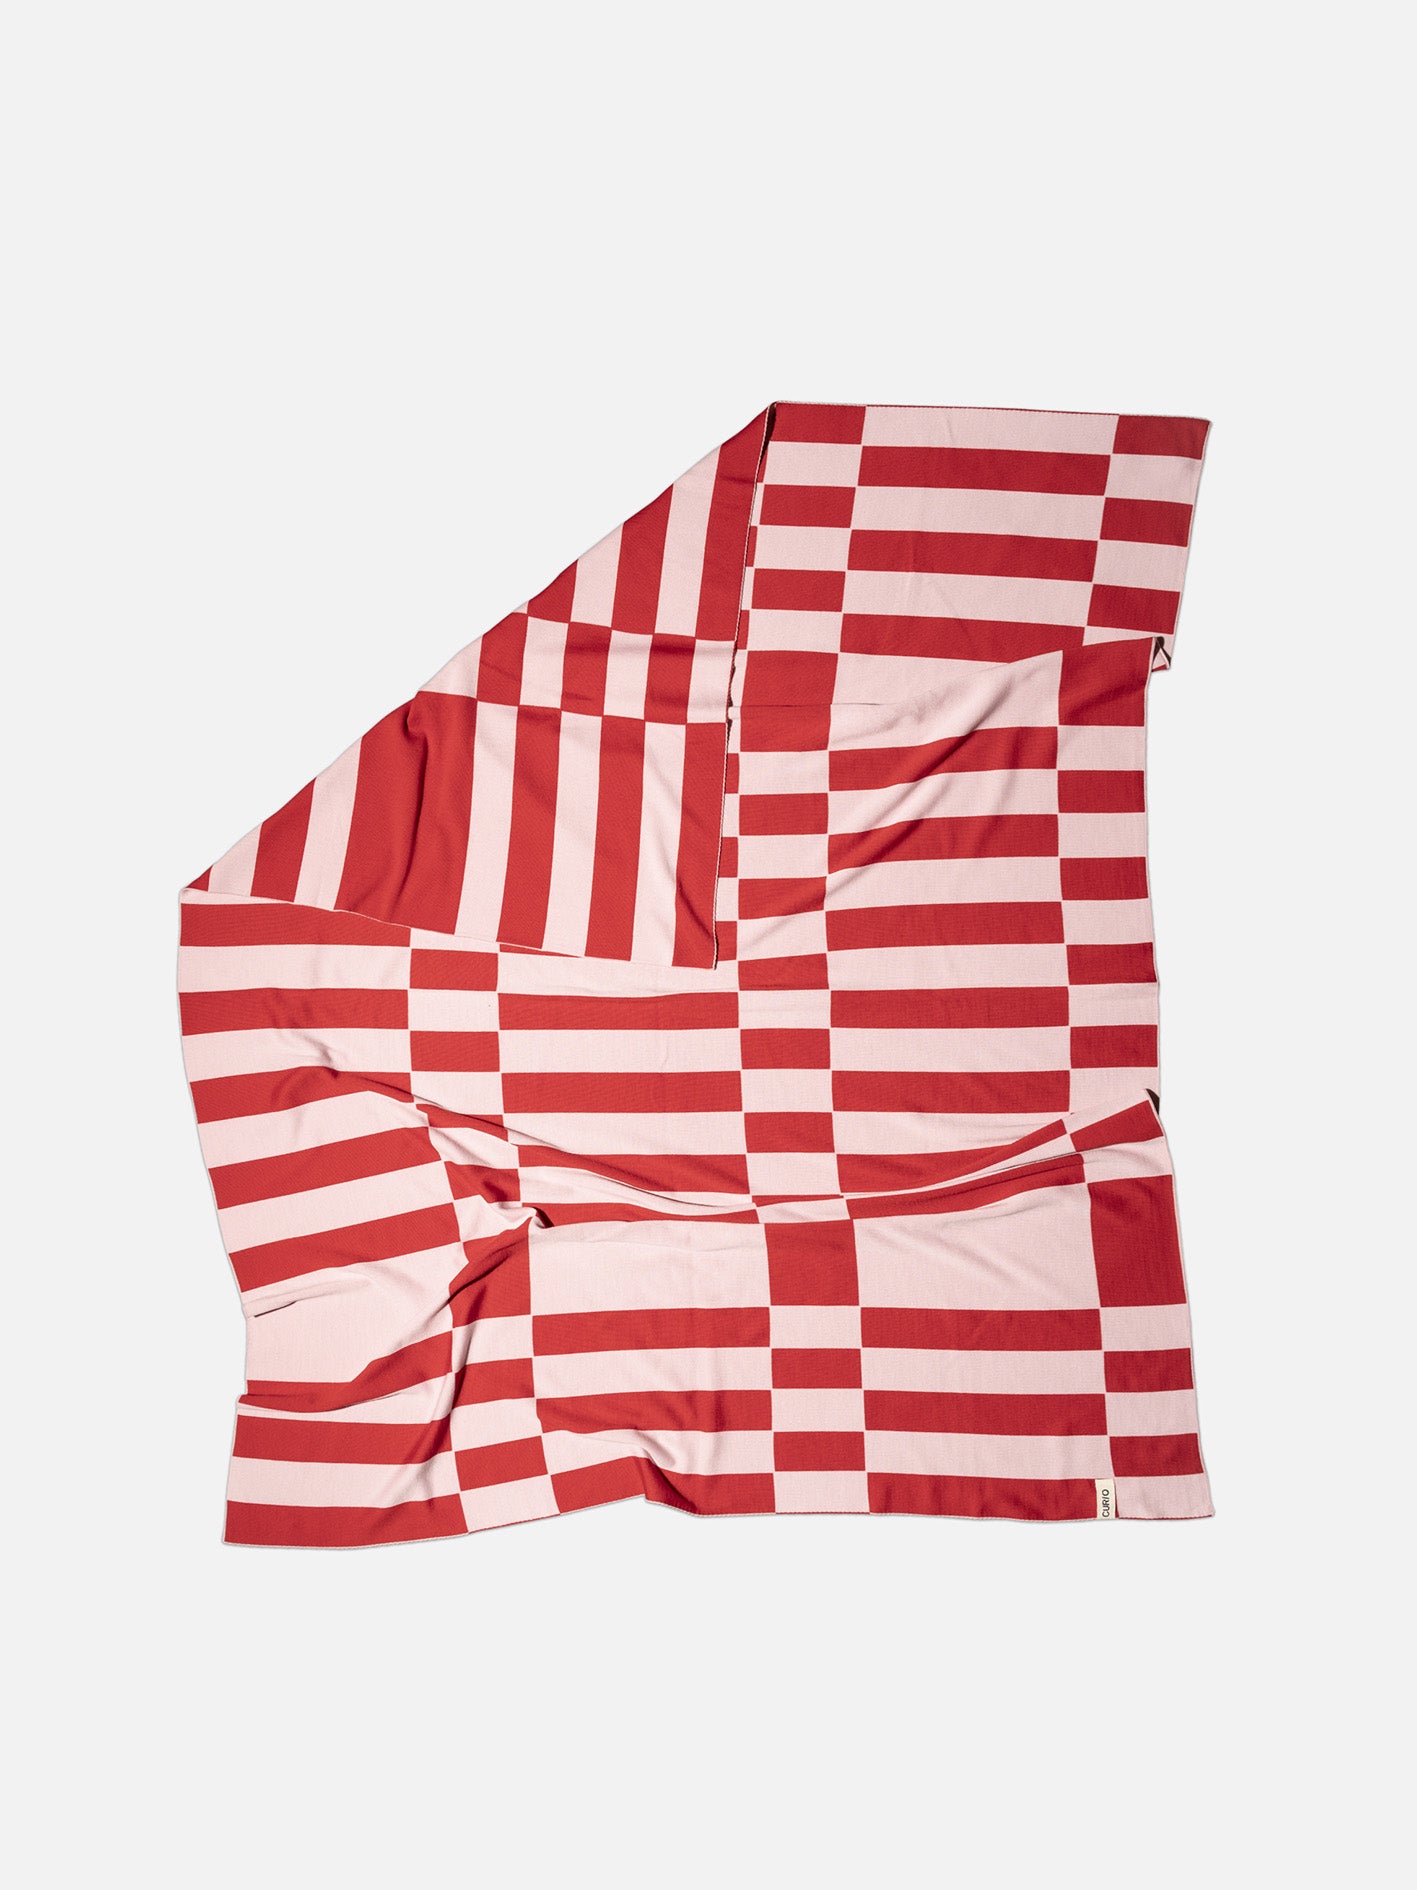 Red and Pink Merino Wool Blanket, Handcrafted, Cozy Australian-Made Merino Wool Throw, Checkered Merino Wool Throw,